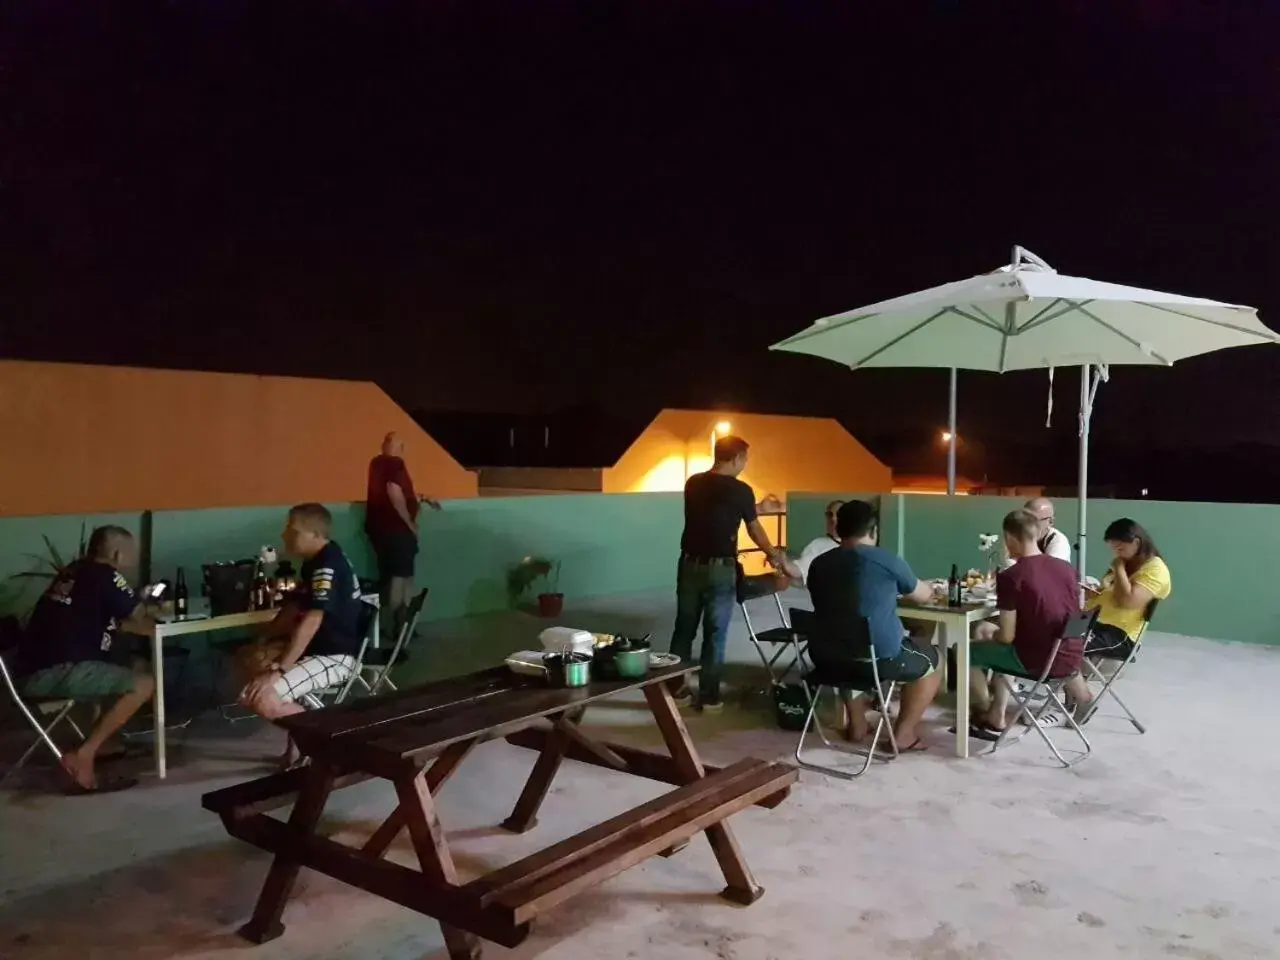 BBQ facilities, Patio/Outdoor Area in Casa Hotel near KLIA 1